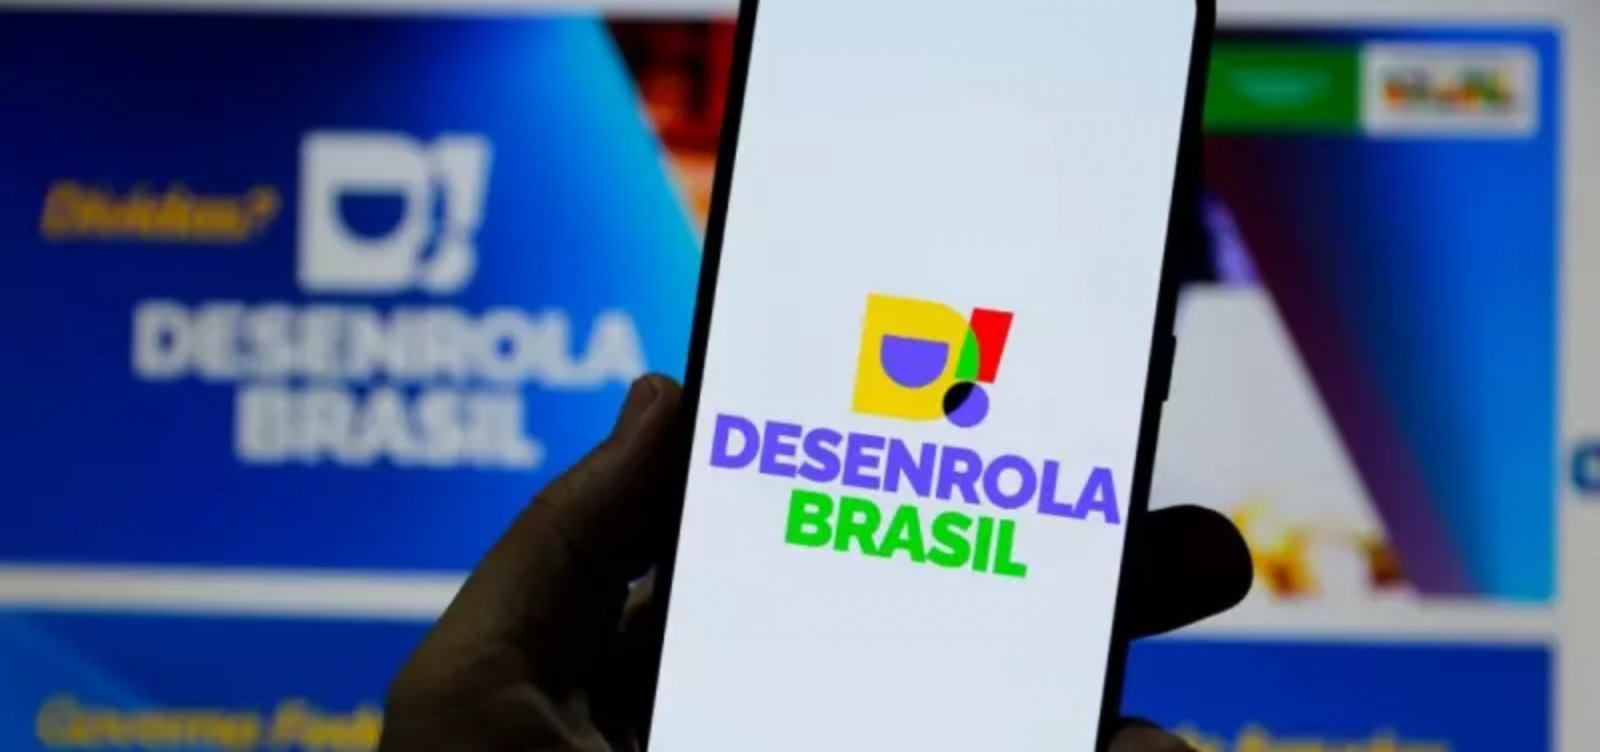 Serasa atinge 1 milhão de acessos em ofertas do programa Desenrola Brasil